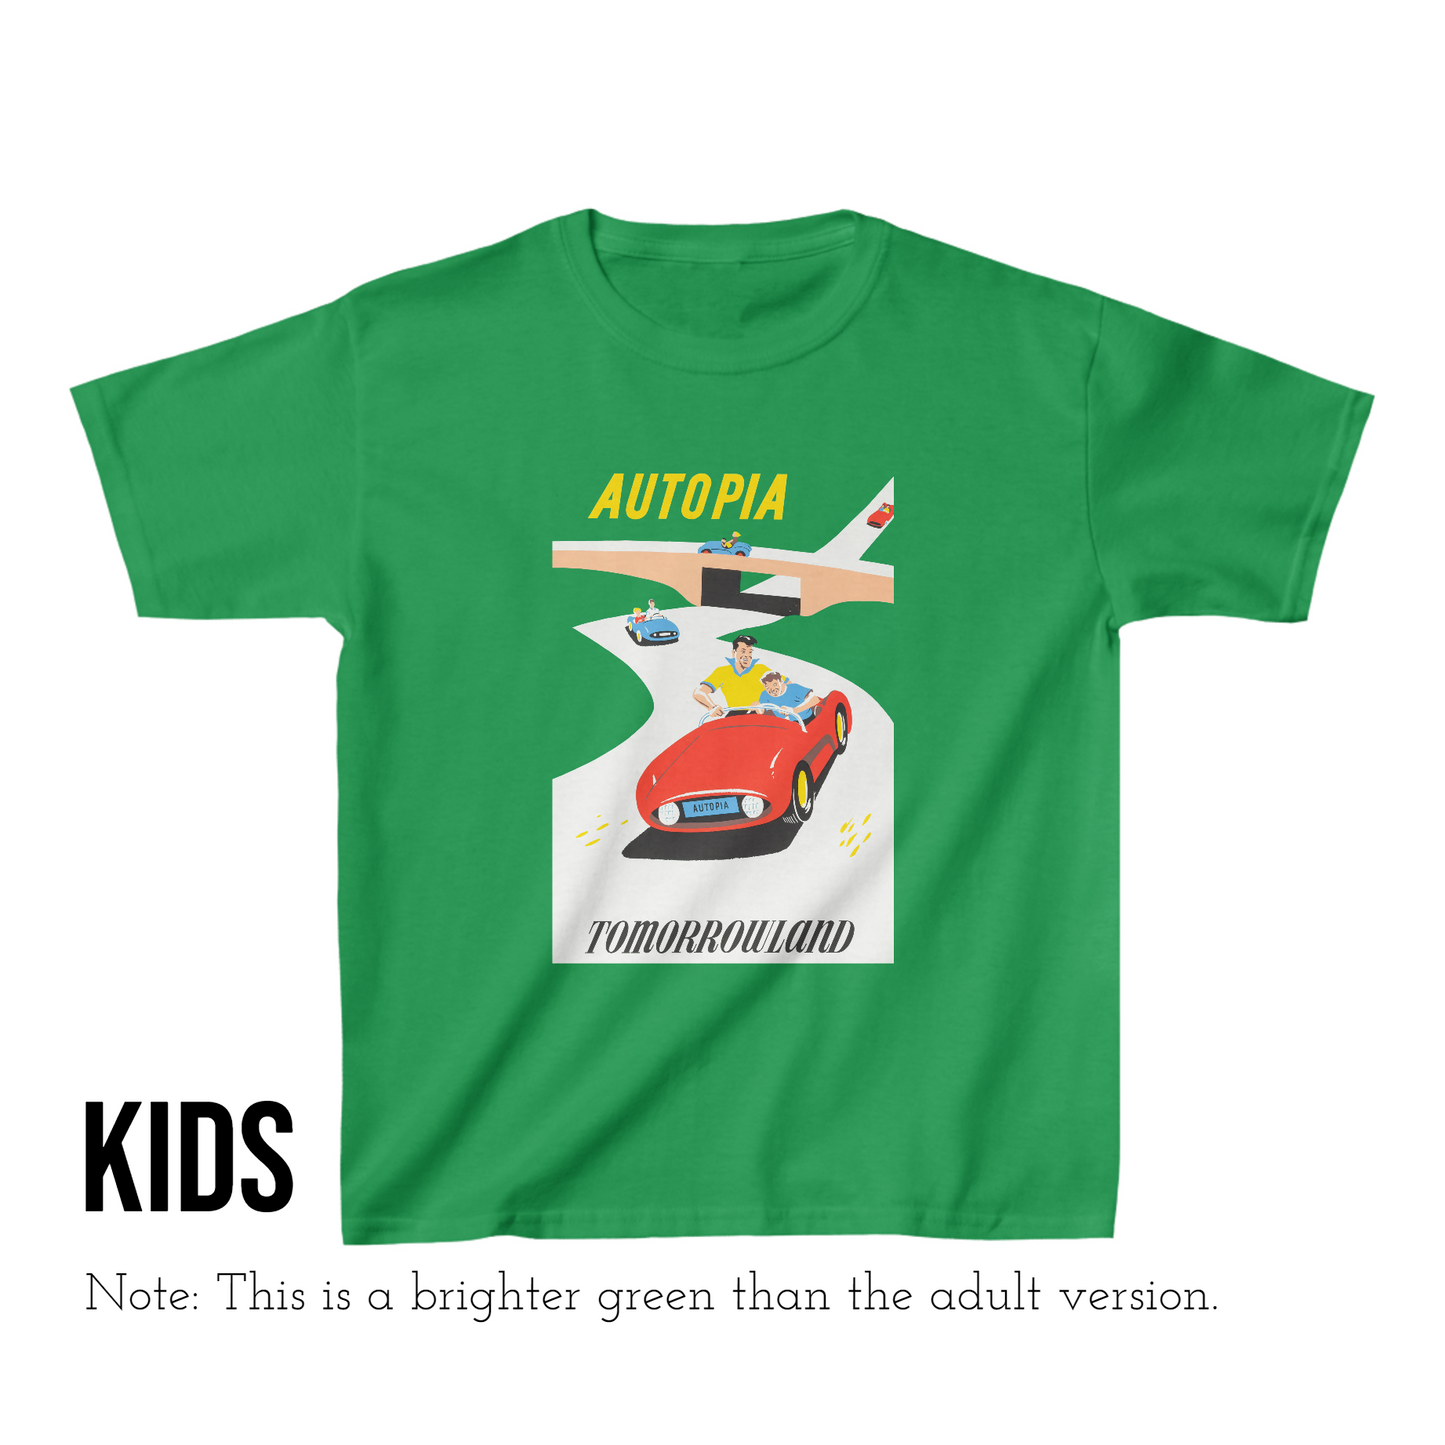 Disneyland Kids Shirt in Green Autopia